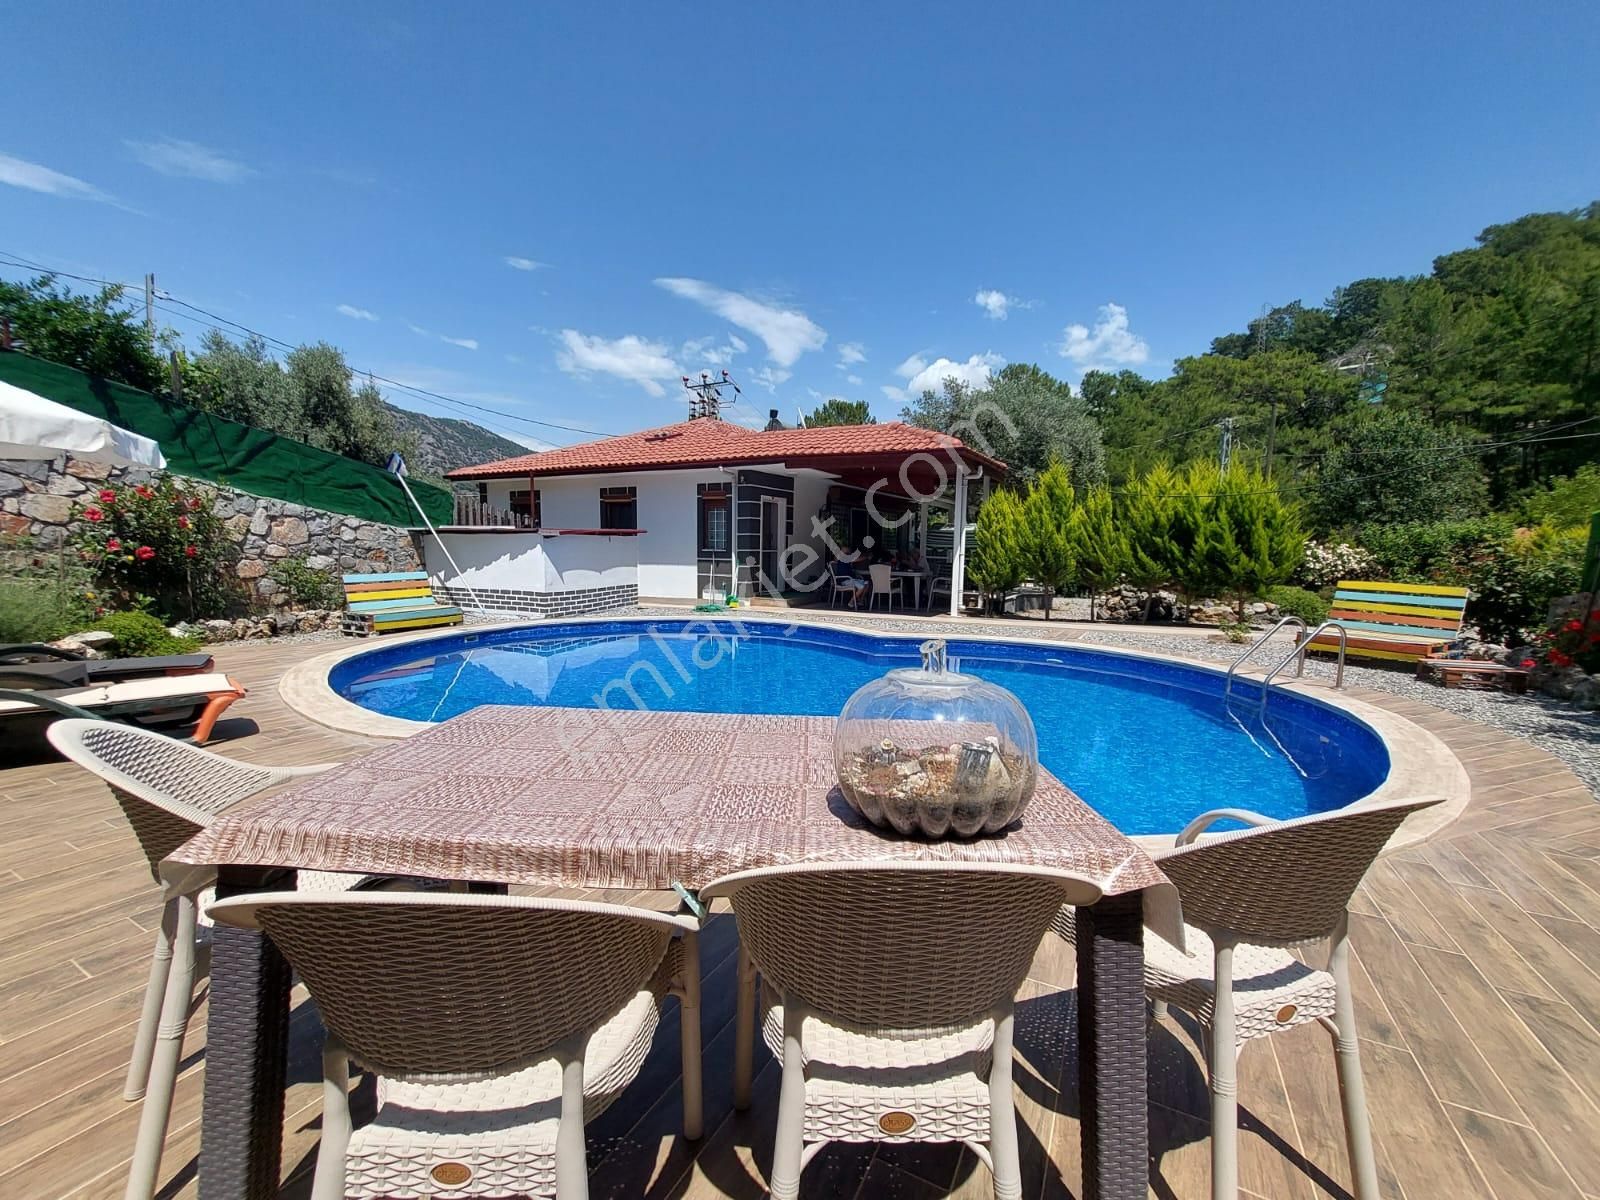 Ortaca Gökbel Satılık Villa  Ortaca Gökbelde Bağımsız Yüzme Havuzlu Eşyalı 155 M2 Ev Satılık